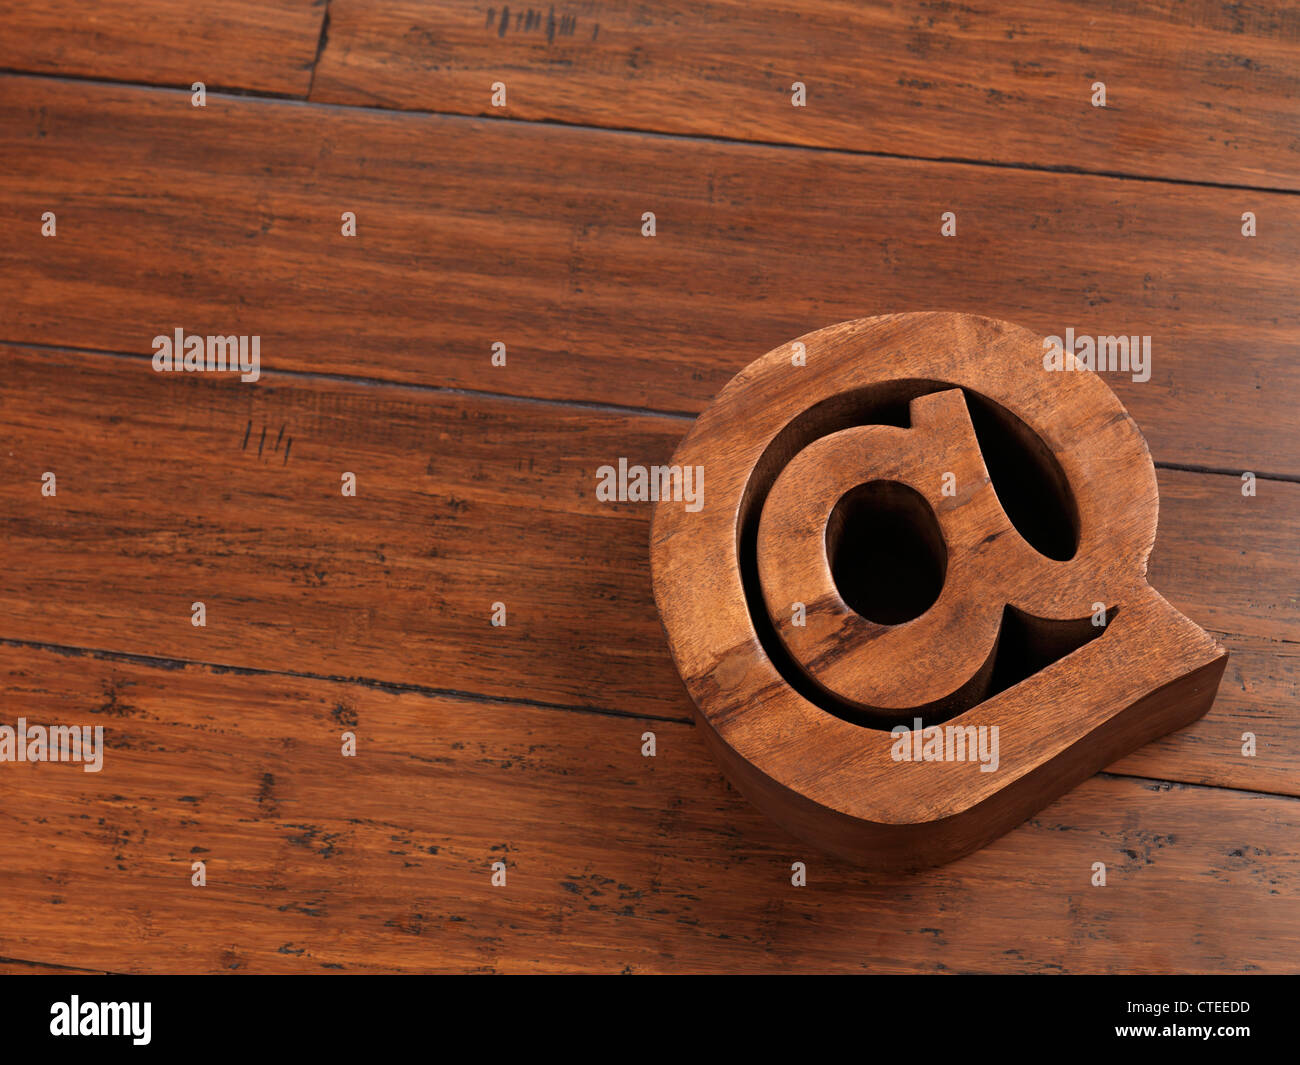 E-Mail-Adresse @ Symbol gemacht aus Holz liegen auf Hardwwod Boden Hintergrund Stockfoto